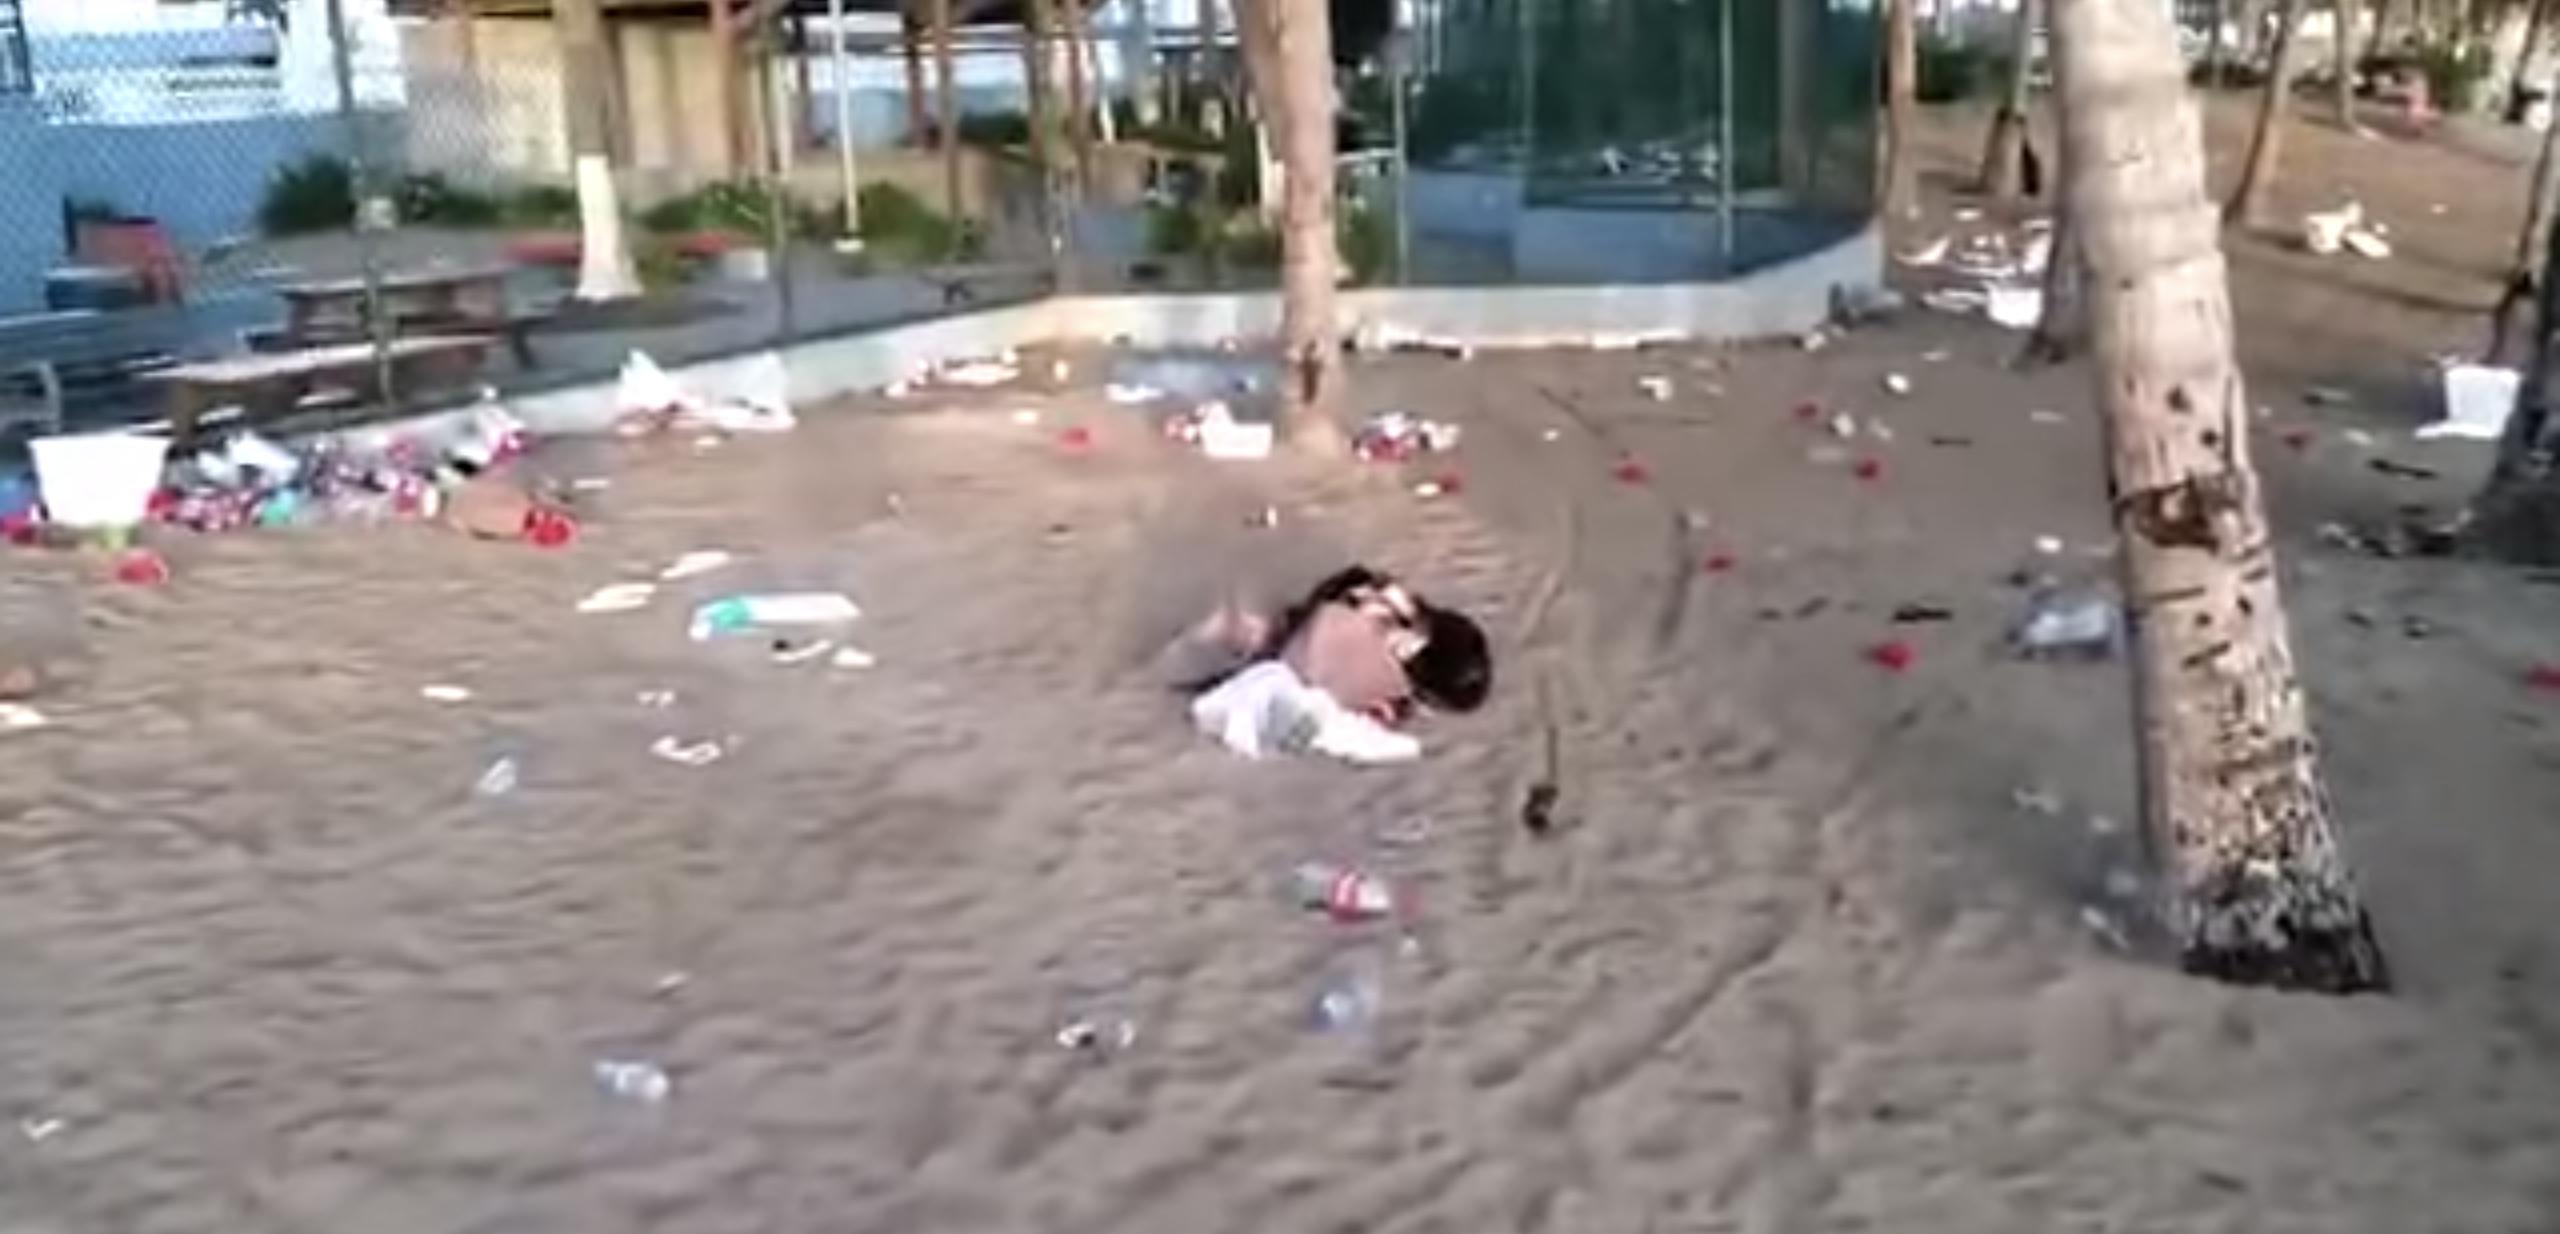 Parte de la playa de Isla Verde, en Carolina, amaneció hoy, domingo, con abundante basura, según denuncias en las redes sociales.